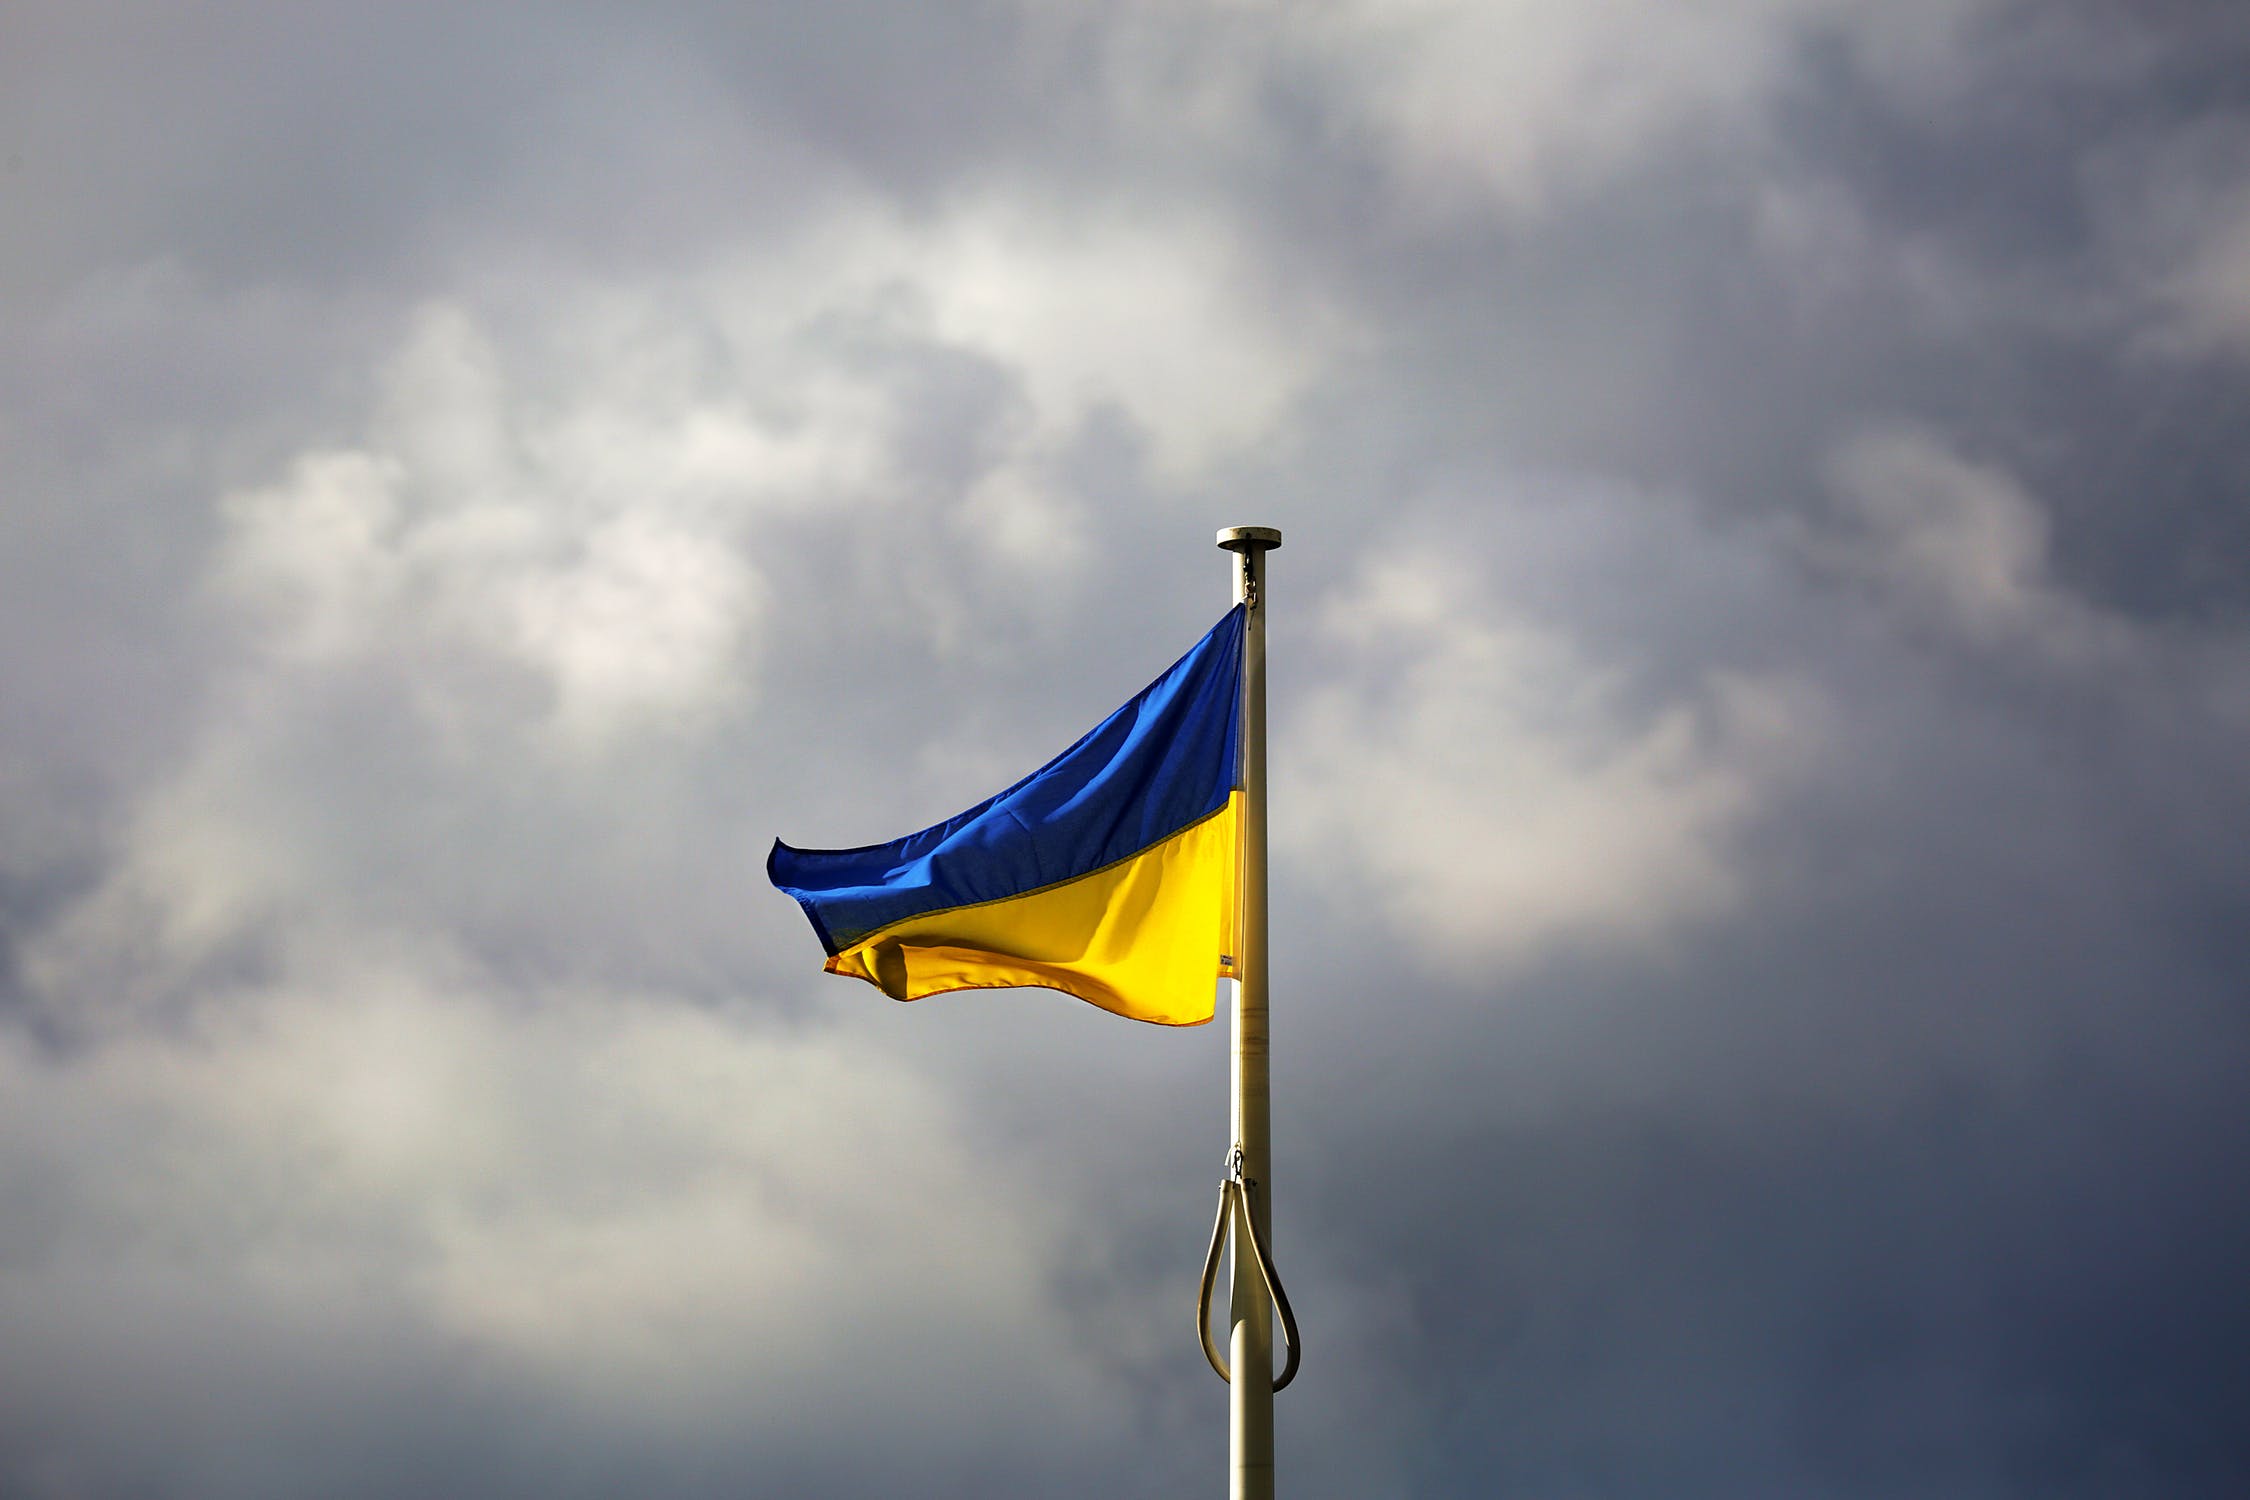 البنك المركزي في أوكرانيا يحظر شراء العملات المشفرة بالعملة المحلية هريفينا